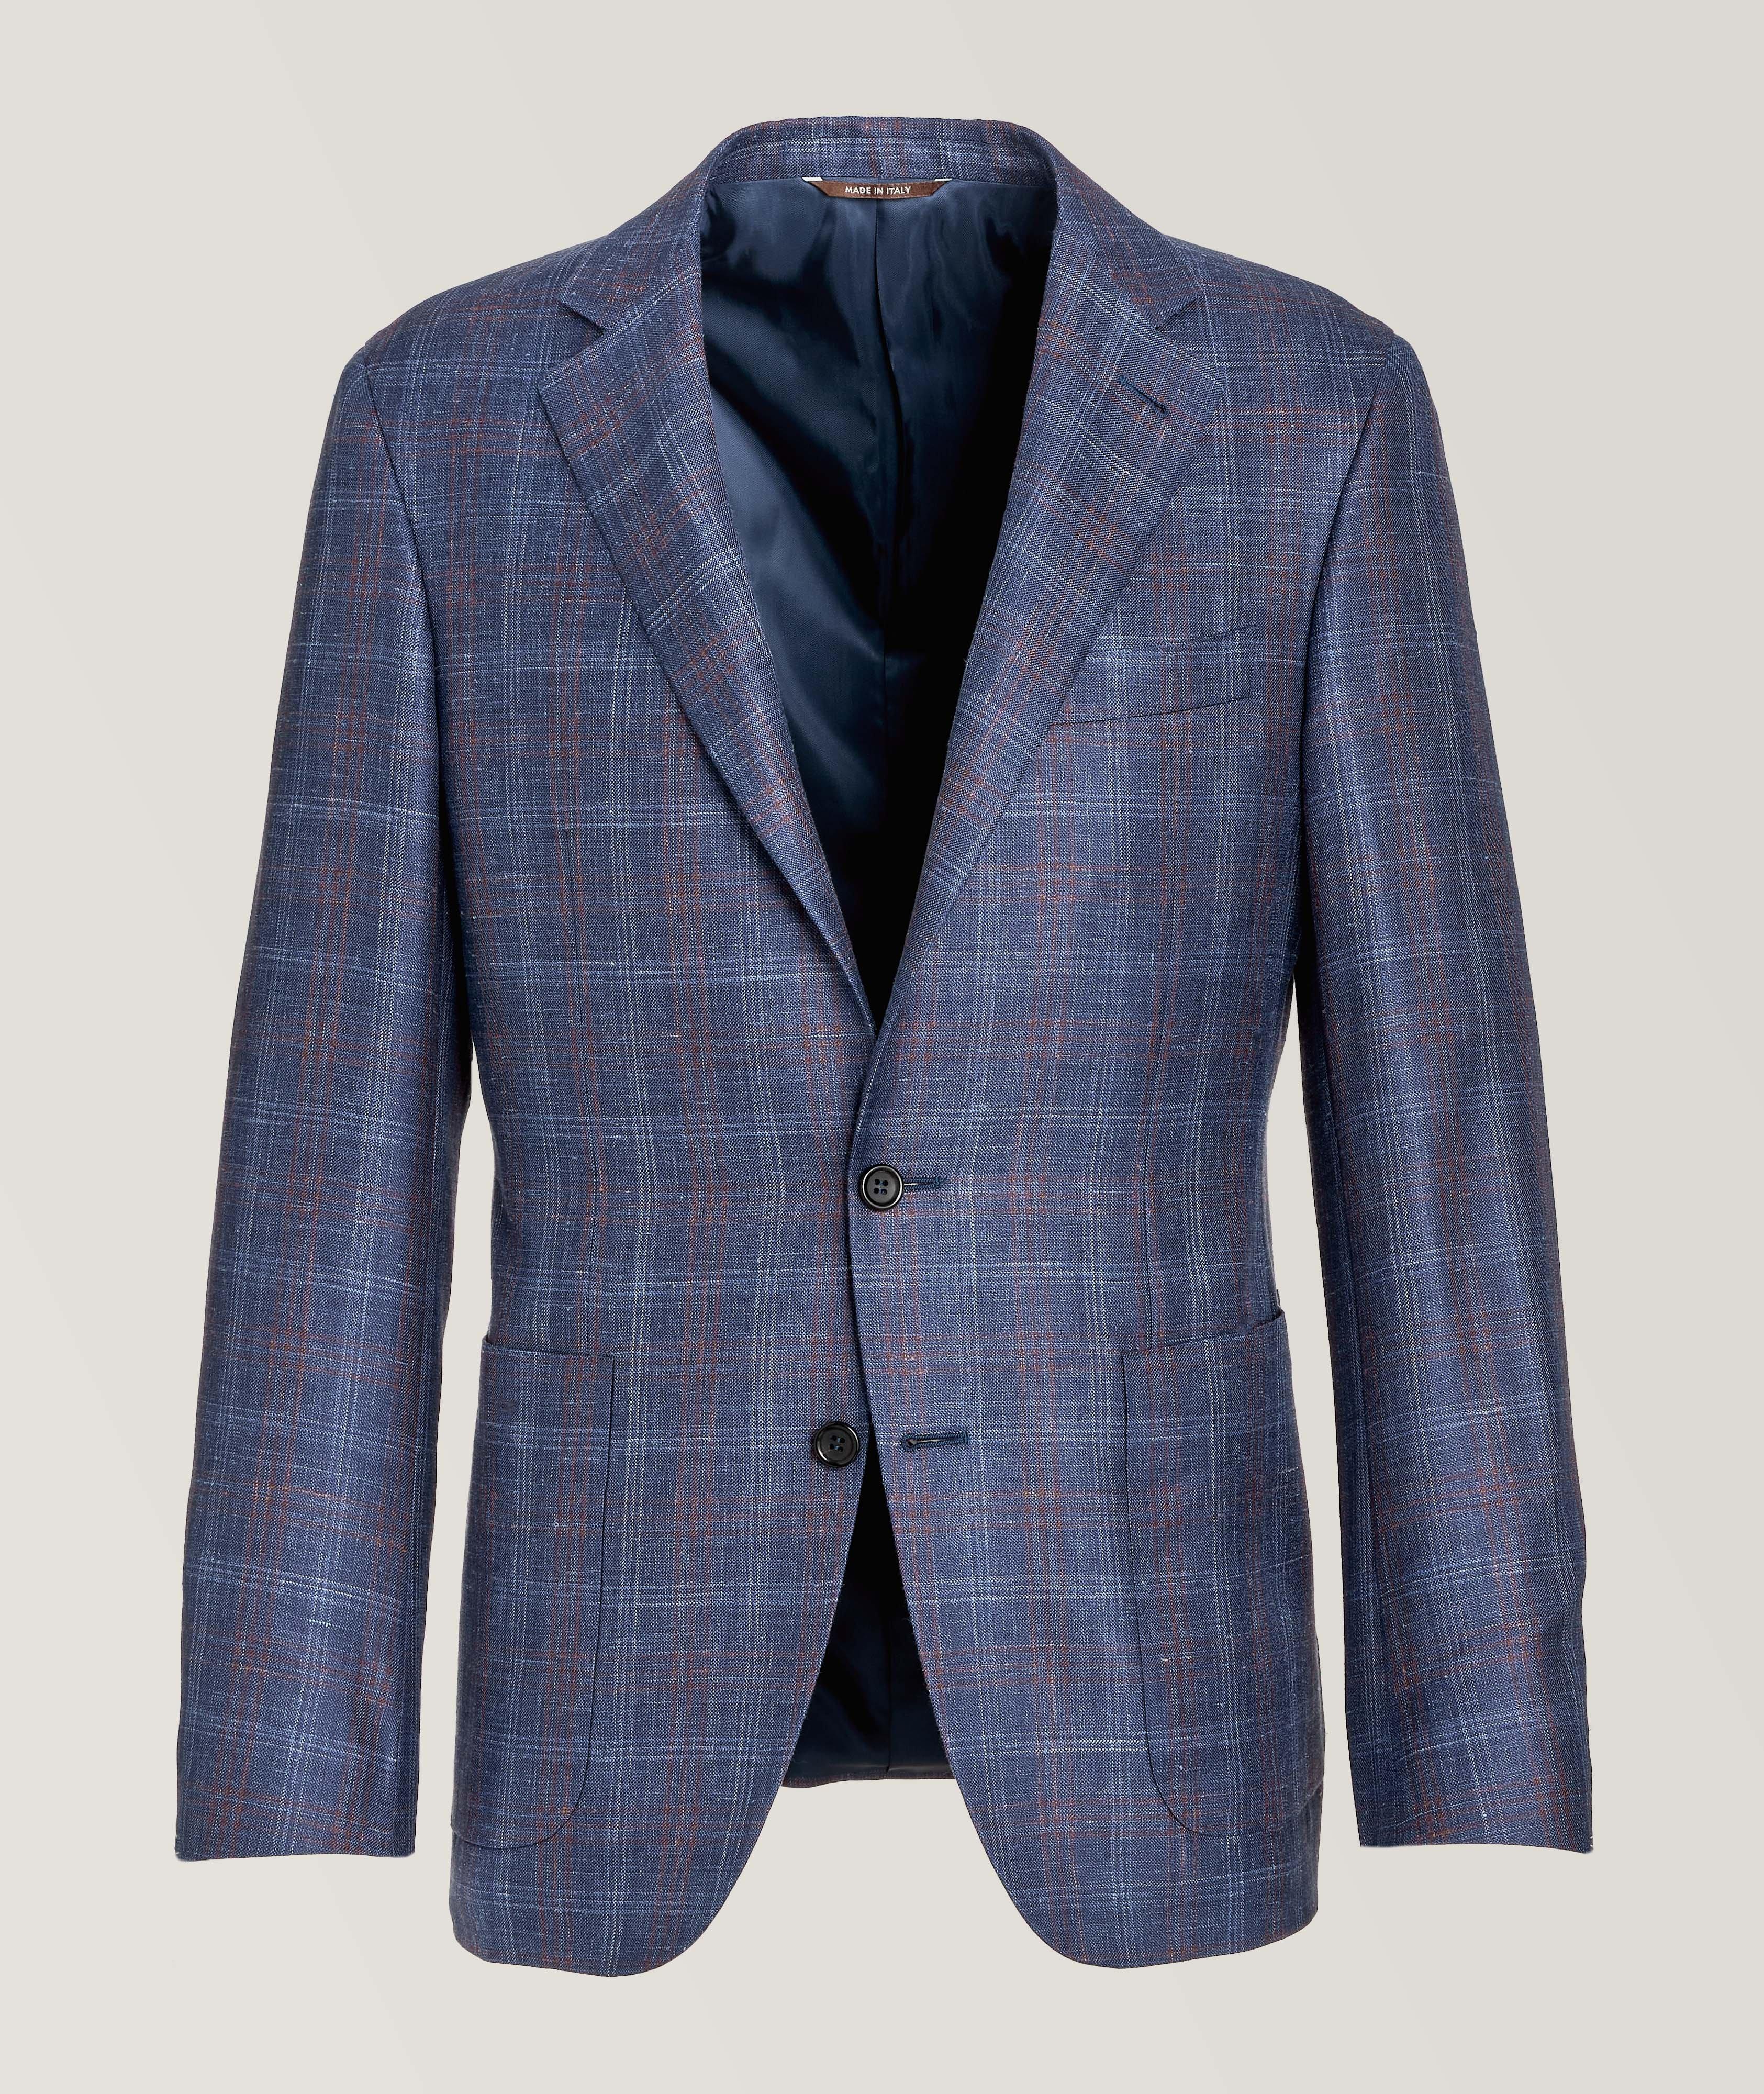 Canali Kei Windowpane Wool, Silk, & Linen Sport Jacket